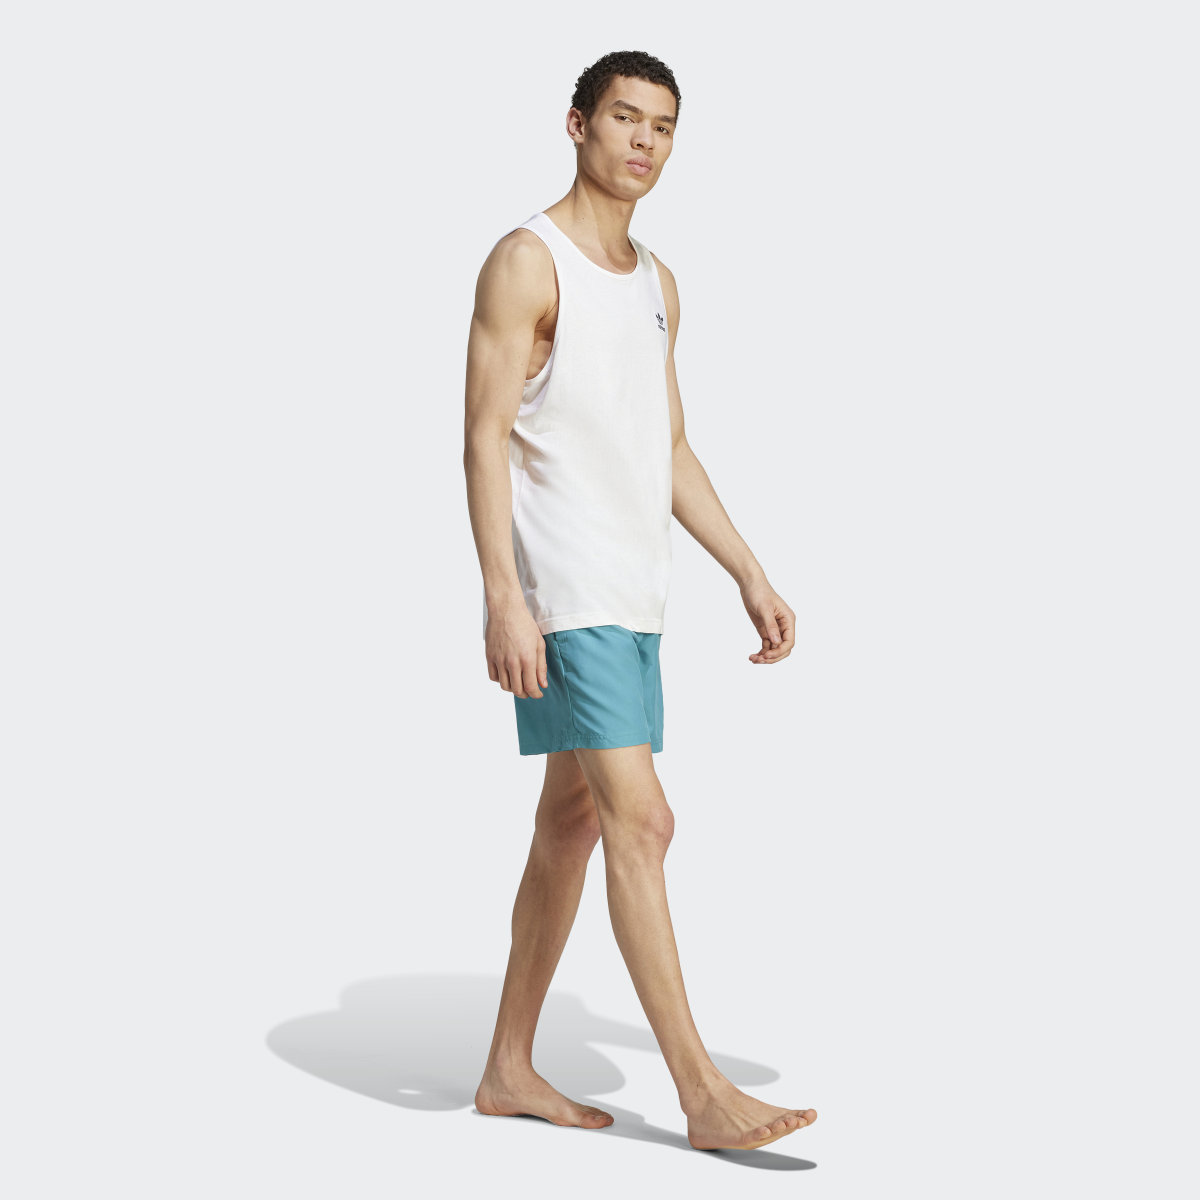 Adidas Originals Essentials Solid Swim Shorts. 4